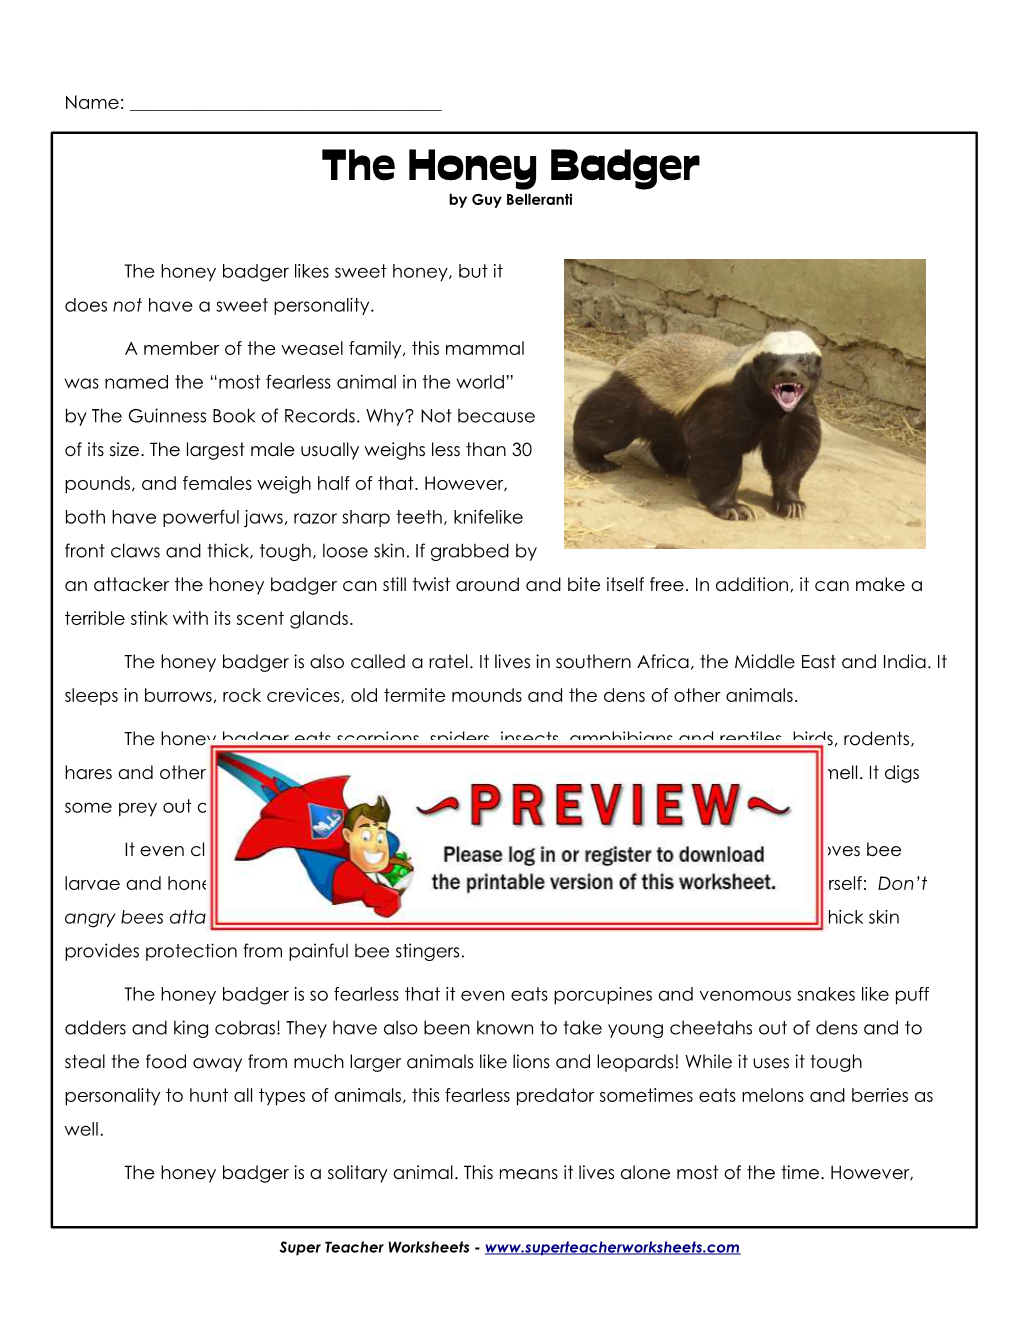 The Honey Badger by Guy Belleranti